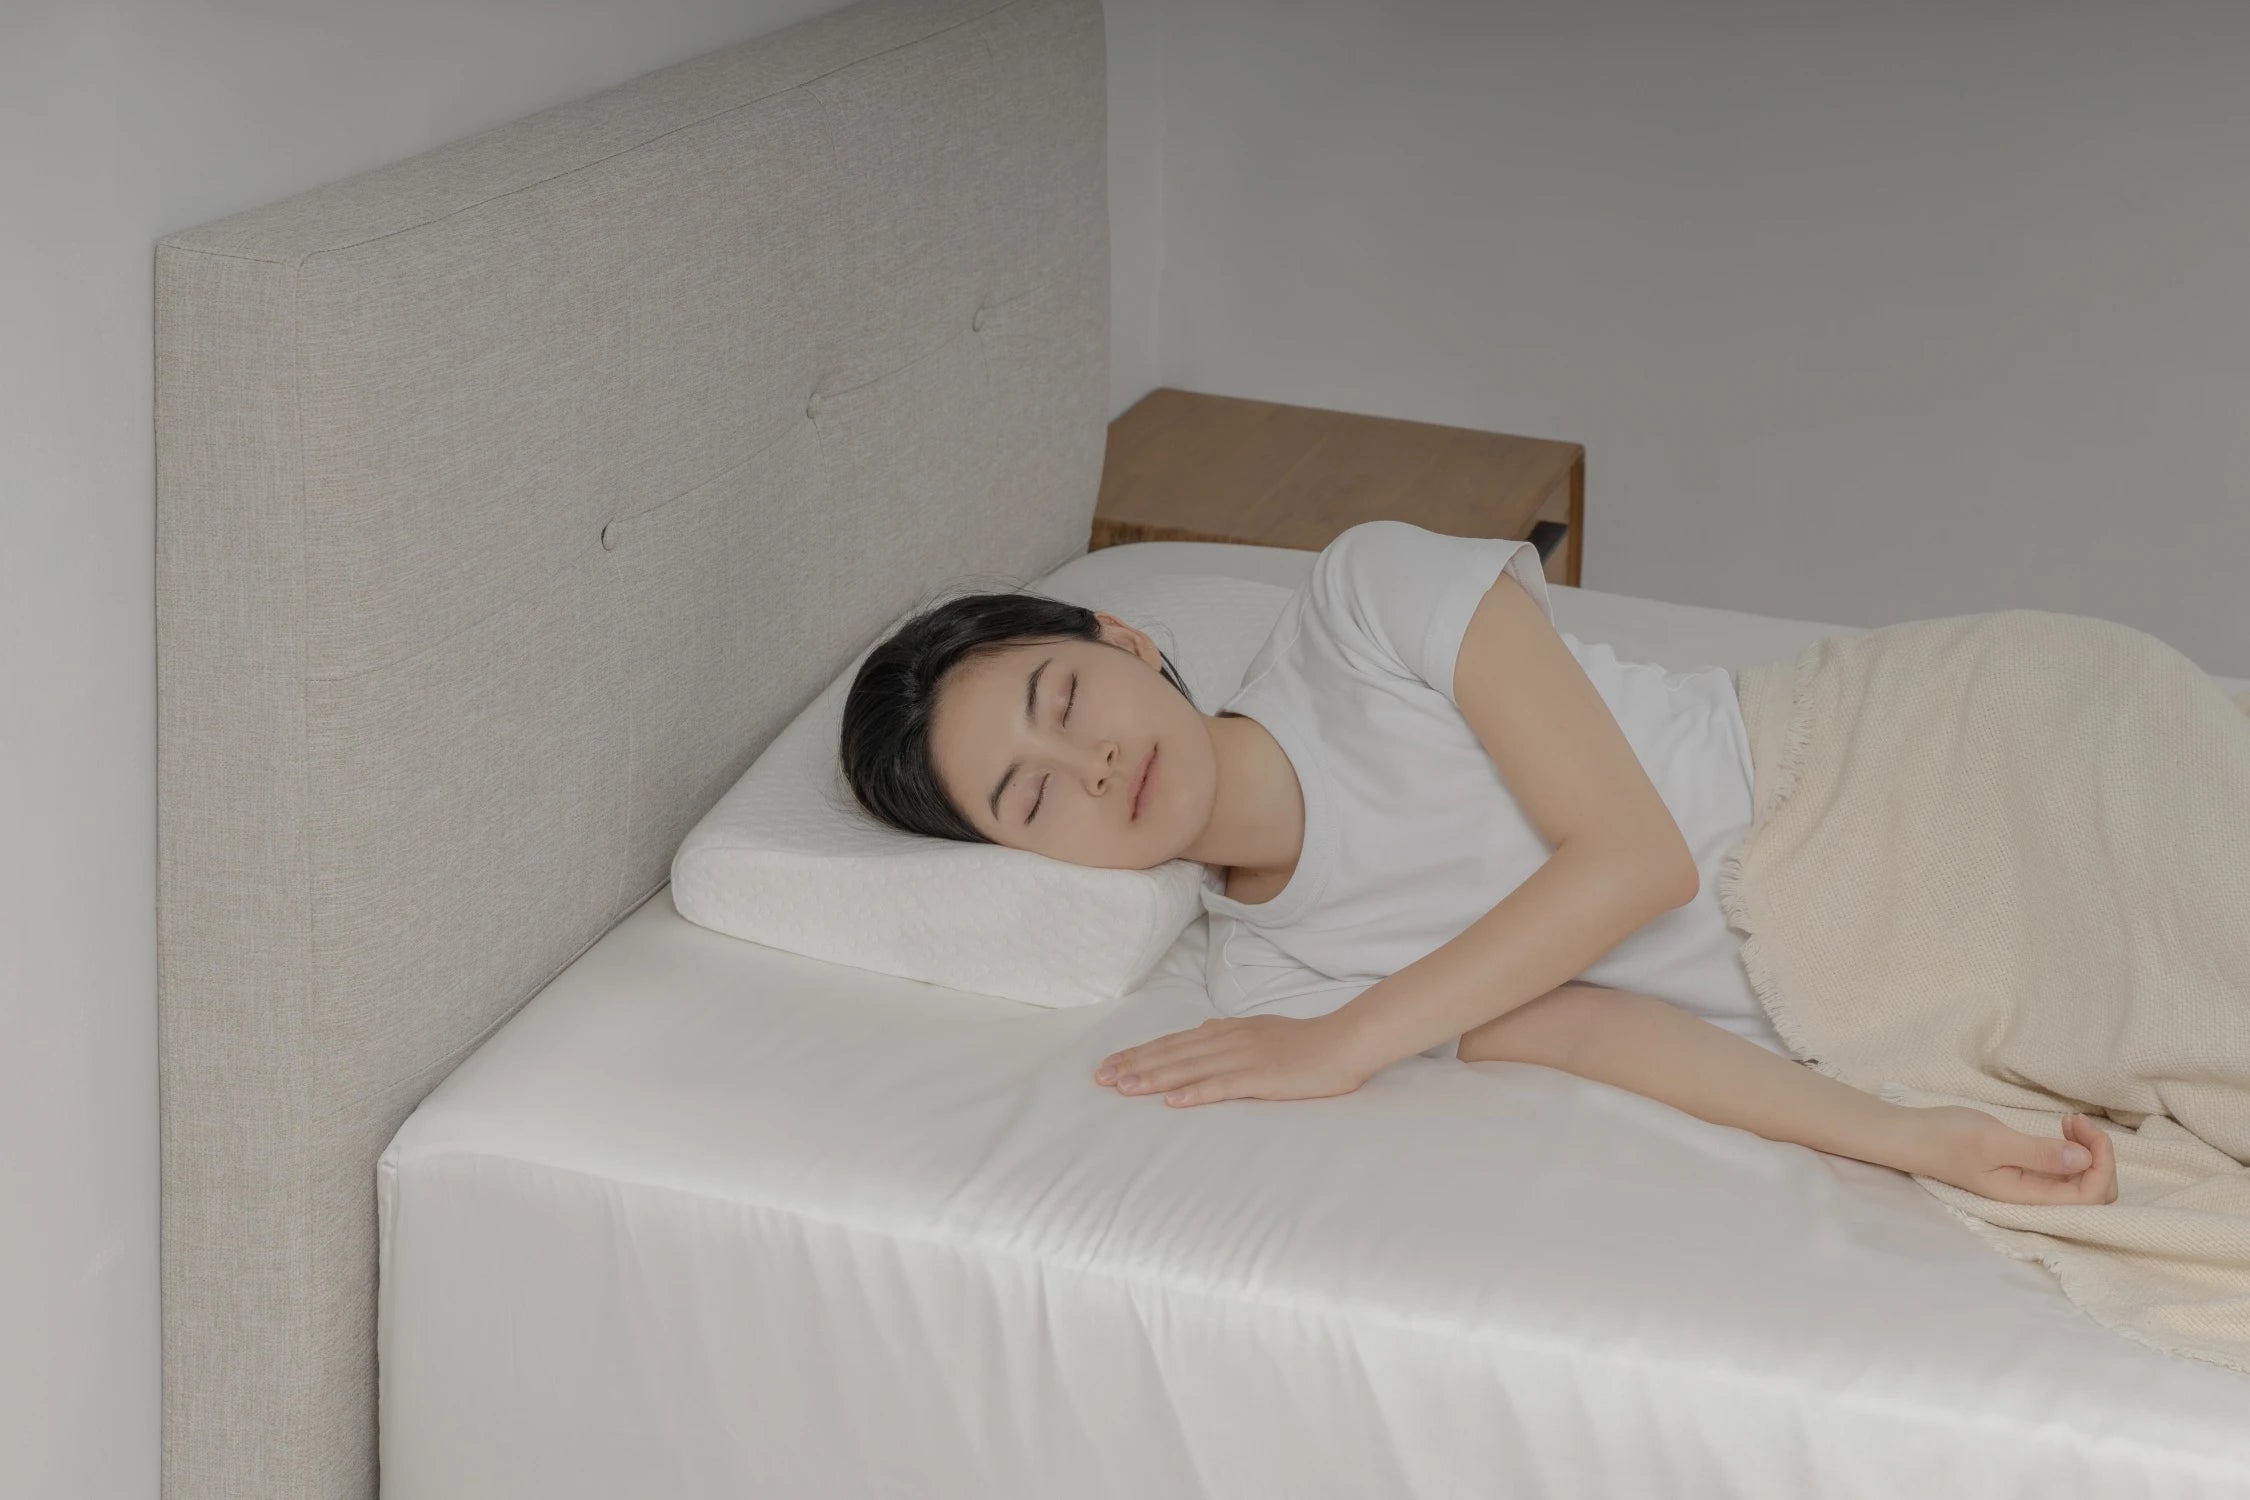 護頸工學記憶枕產品情境照 - 女子側躺於床上使用護頸工學記憶枕